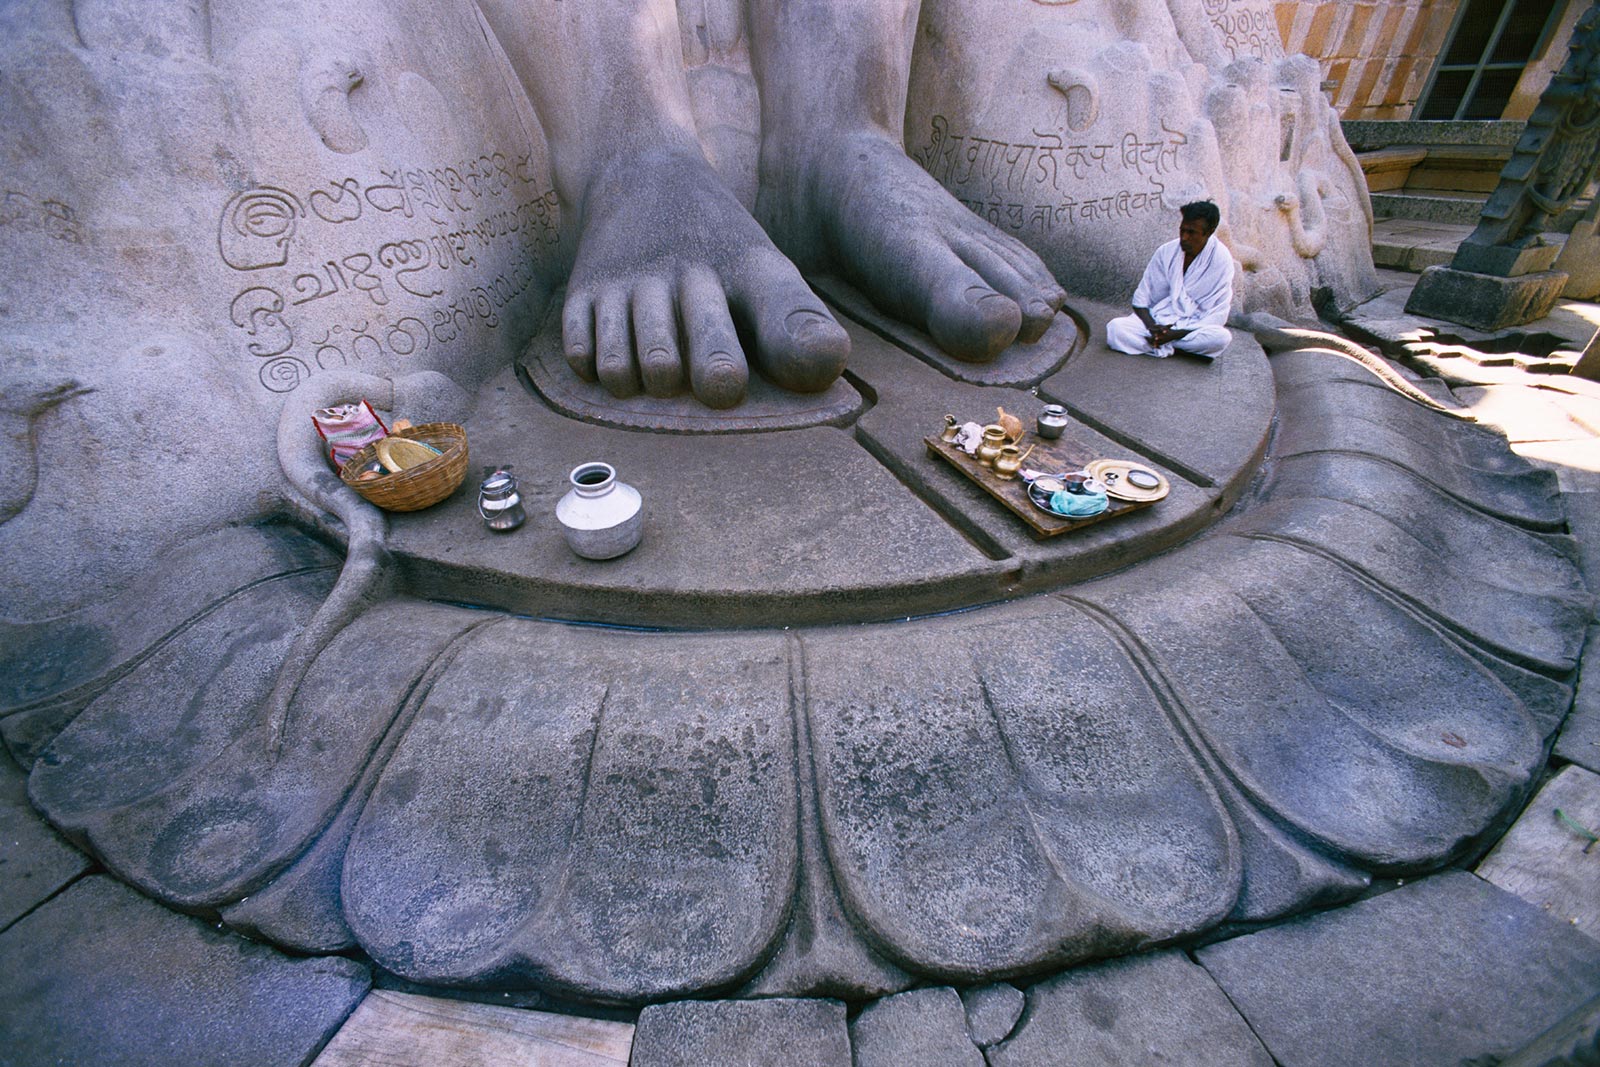 Sri Gomatheswar estatuaren oin santuak, Shravanabelagola, India